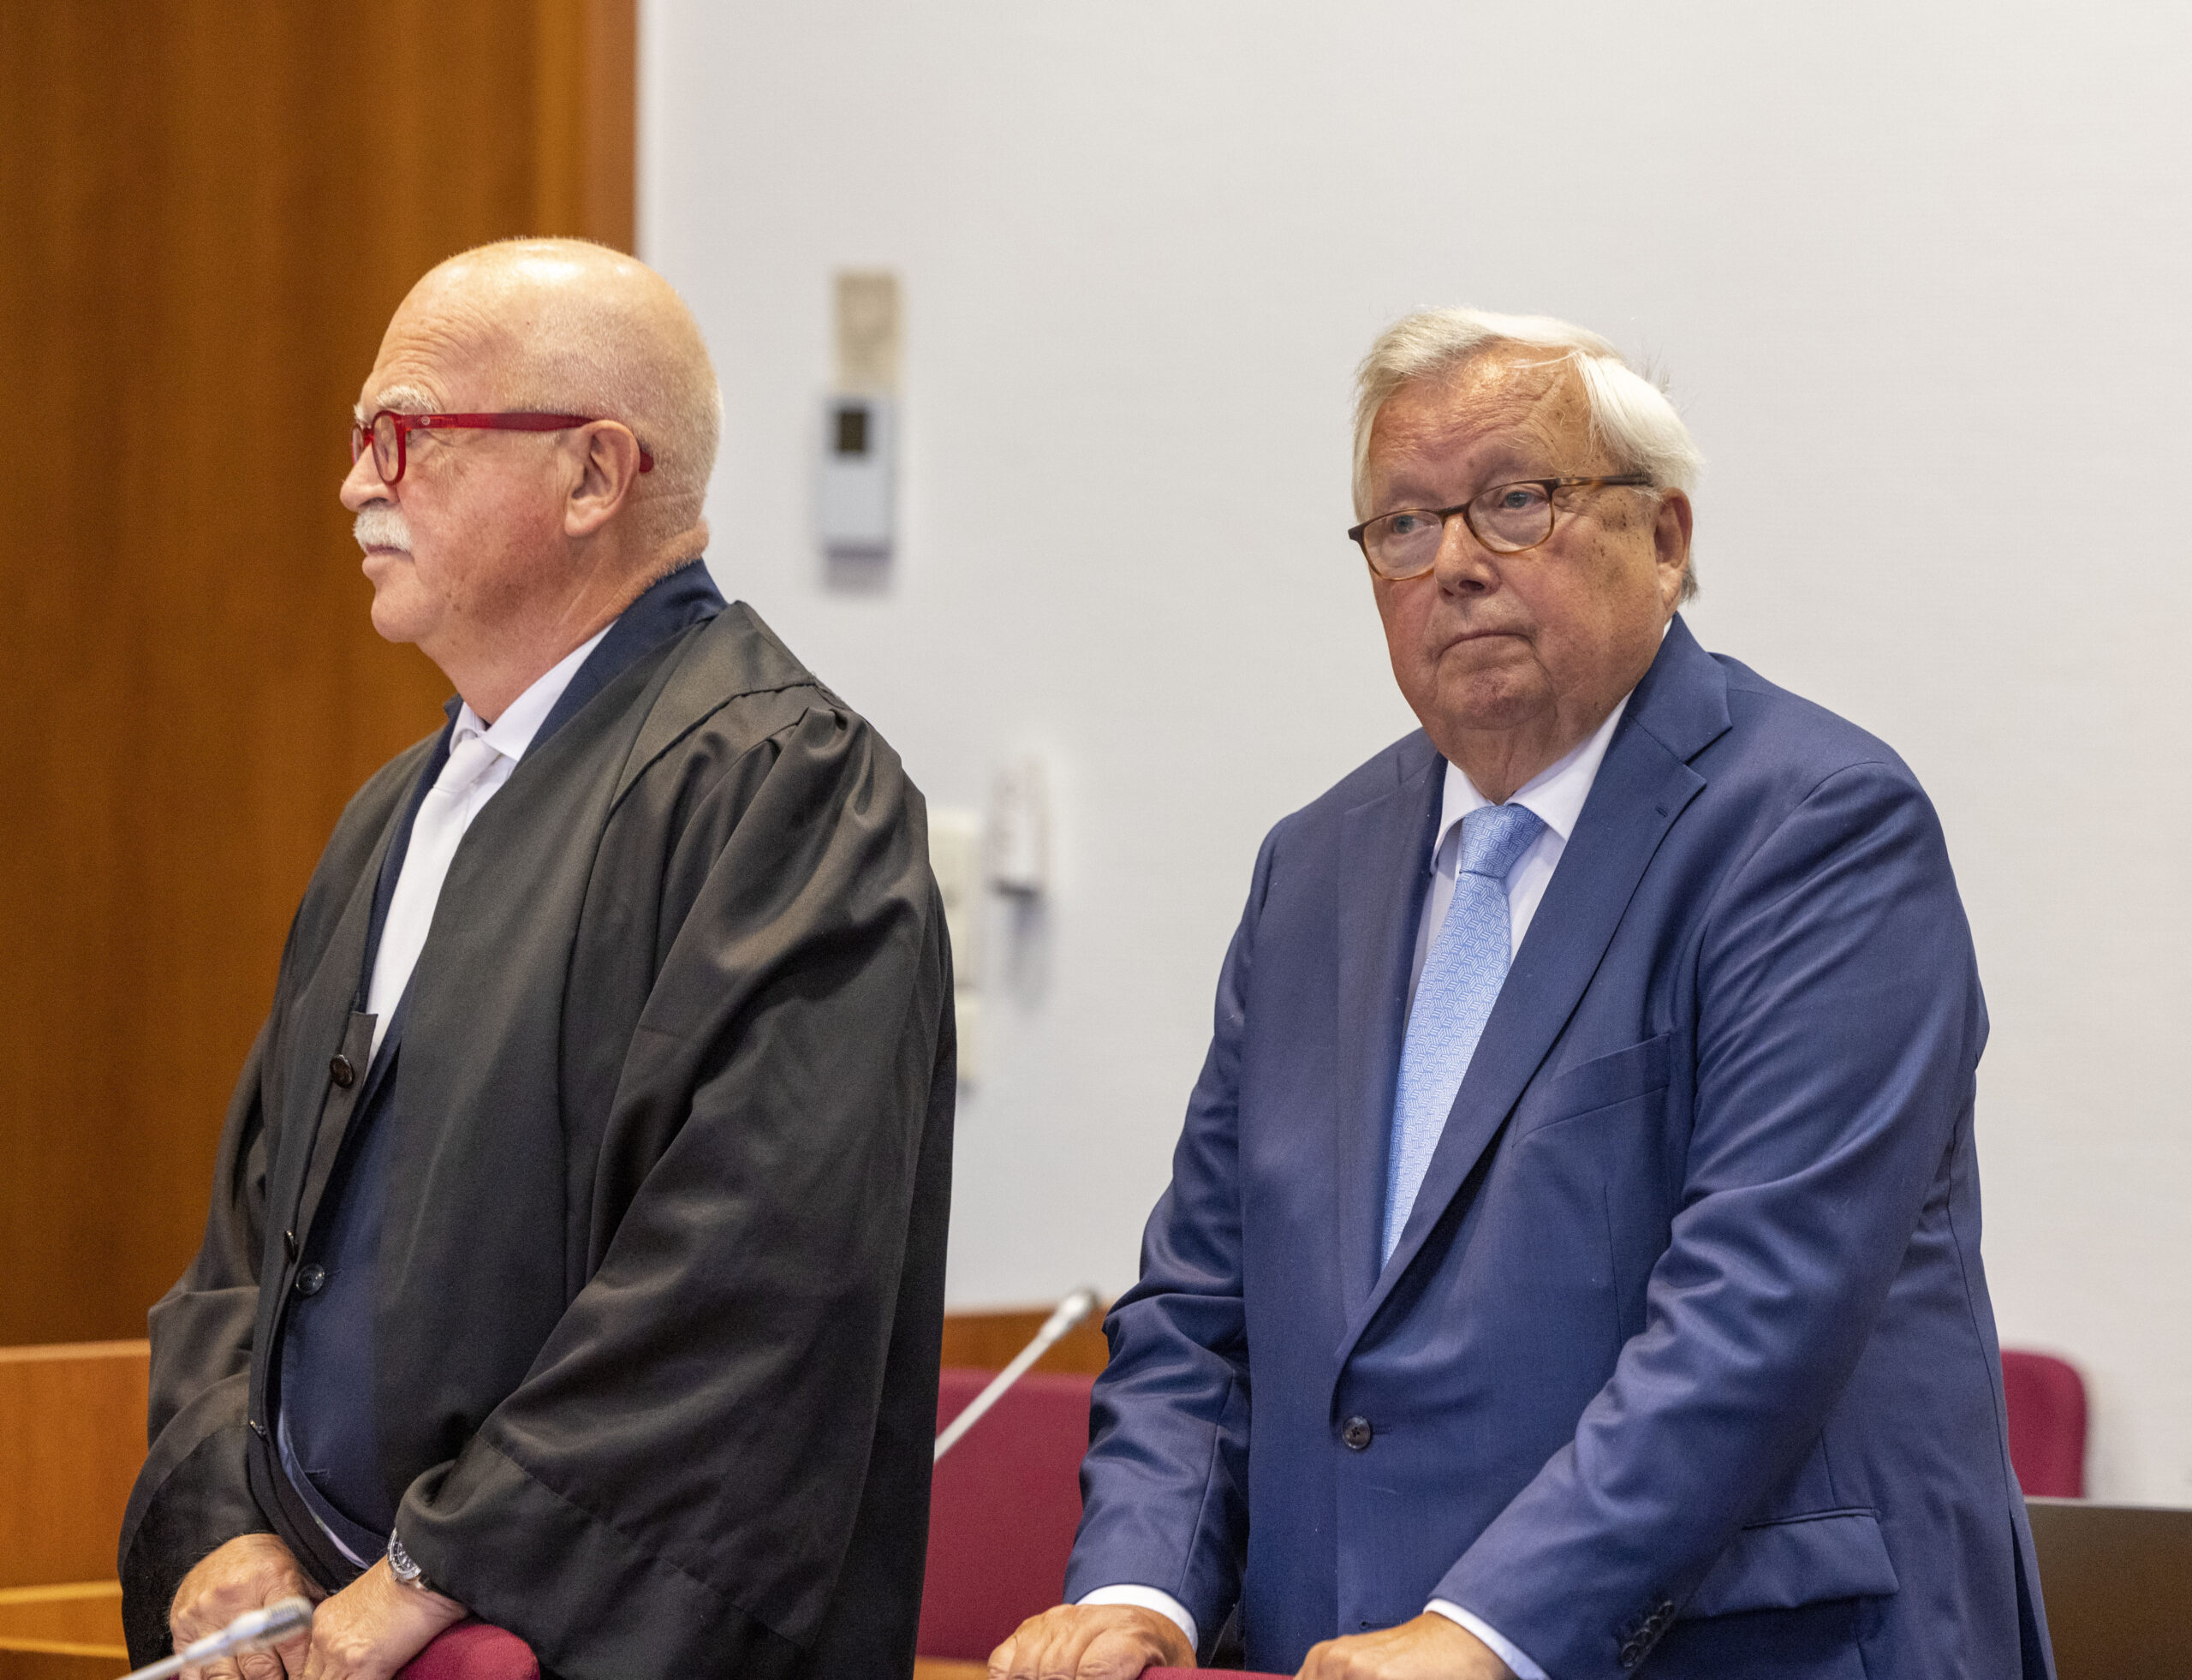 Der angeklagte Bankier Christian Olearius (r.) steht neben seinem Anwalt Peter Gauweiler im Gerichtssaal im Bonner Landgericht.